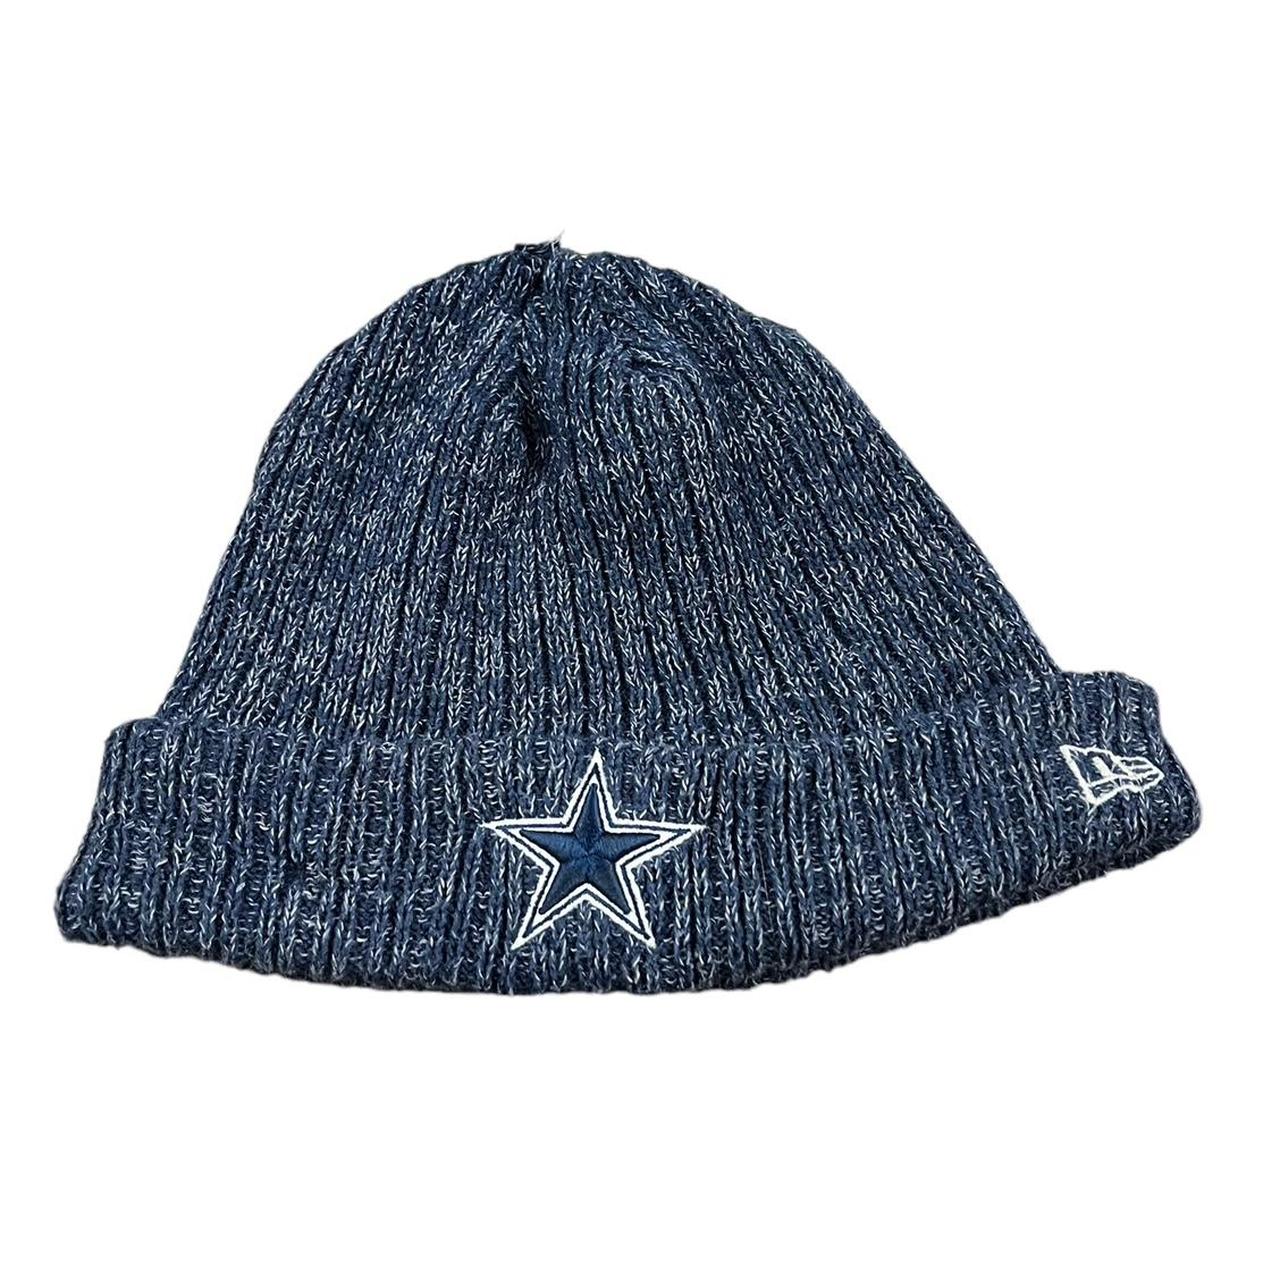 Dallas Cowboys Knit Hat Beanie GUC Good used... - Depop